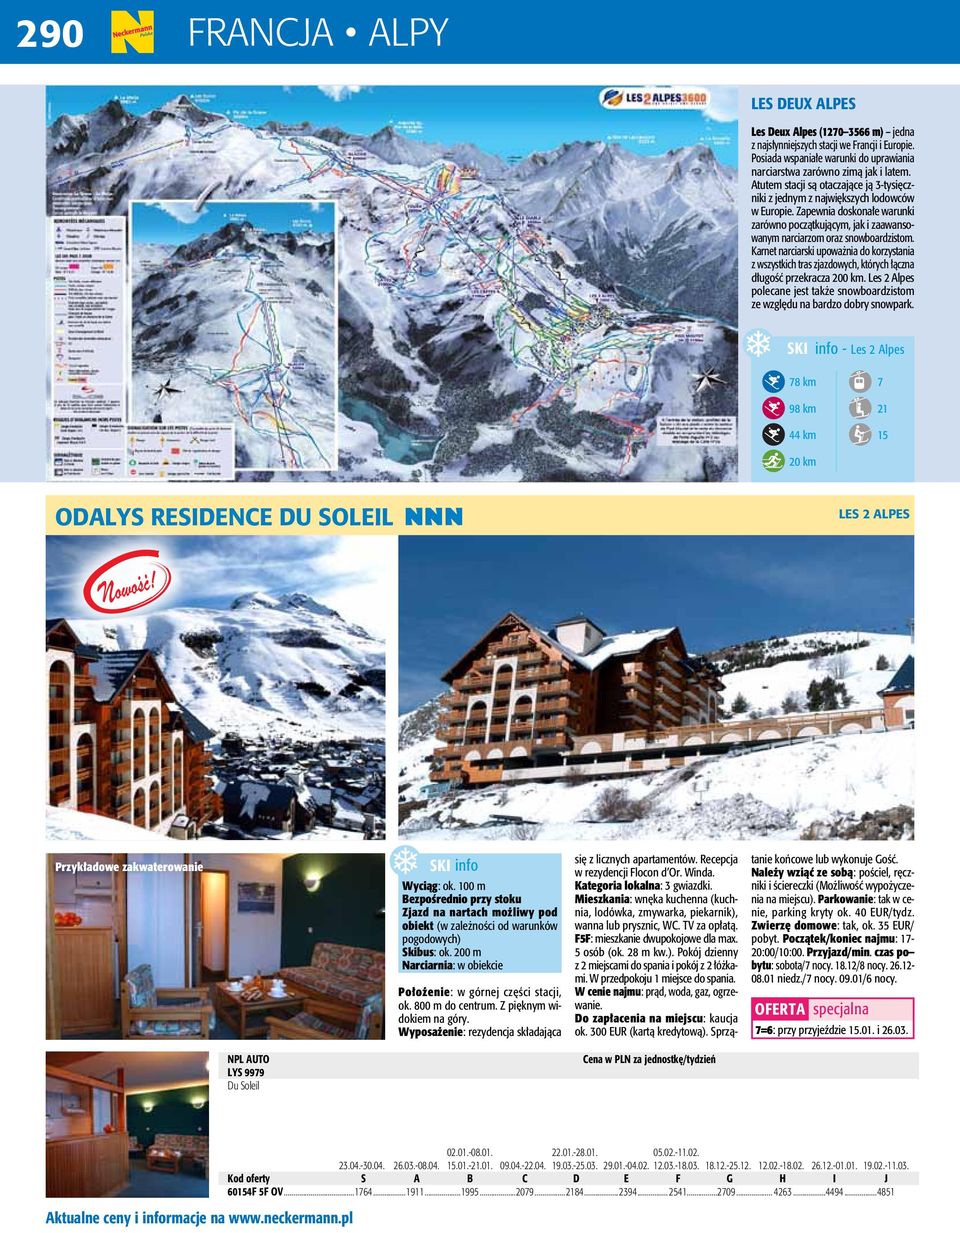 Karnet narciarski upoważnia do korzystania z wszystkich tras zjazdowych, których łączna długość przekracza 200 km. Les 2 Alpes polecane jest także snowboardzistom ze względu na bardzo dobry snowpark.